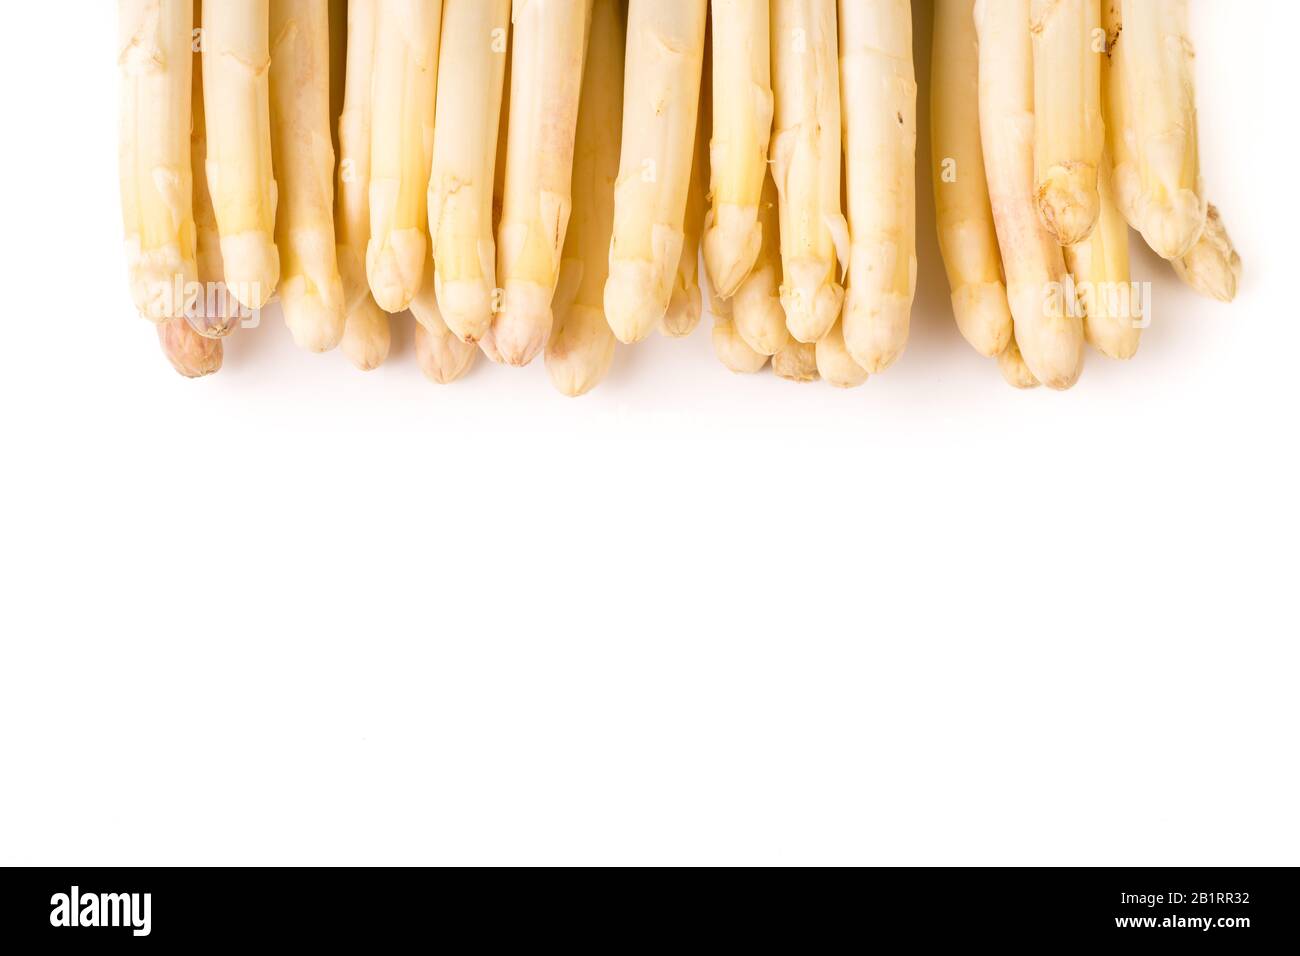 bundle of organic asparagus isolated on white background Stock Photo